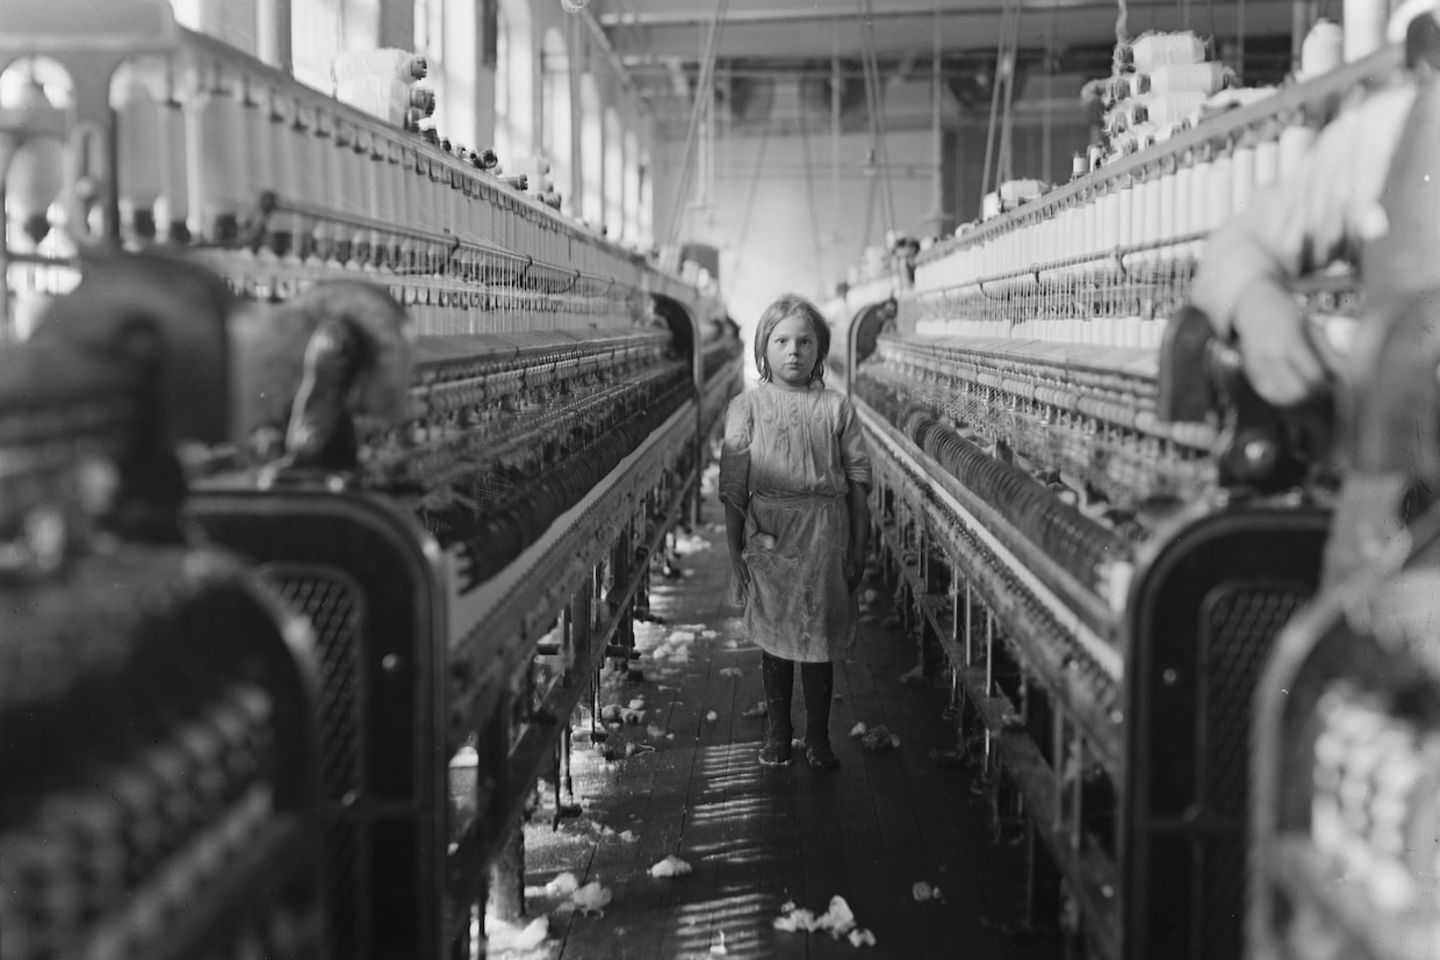 Ein Mädchen arbeitet im Jahr 1908 in einer Spinnerei.